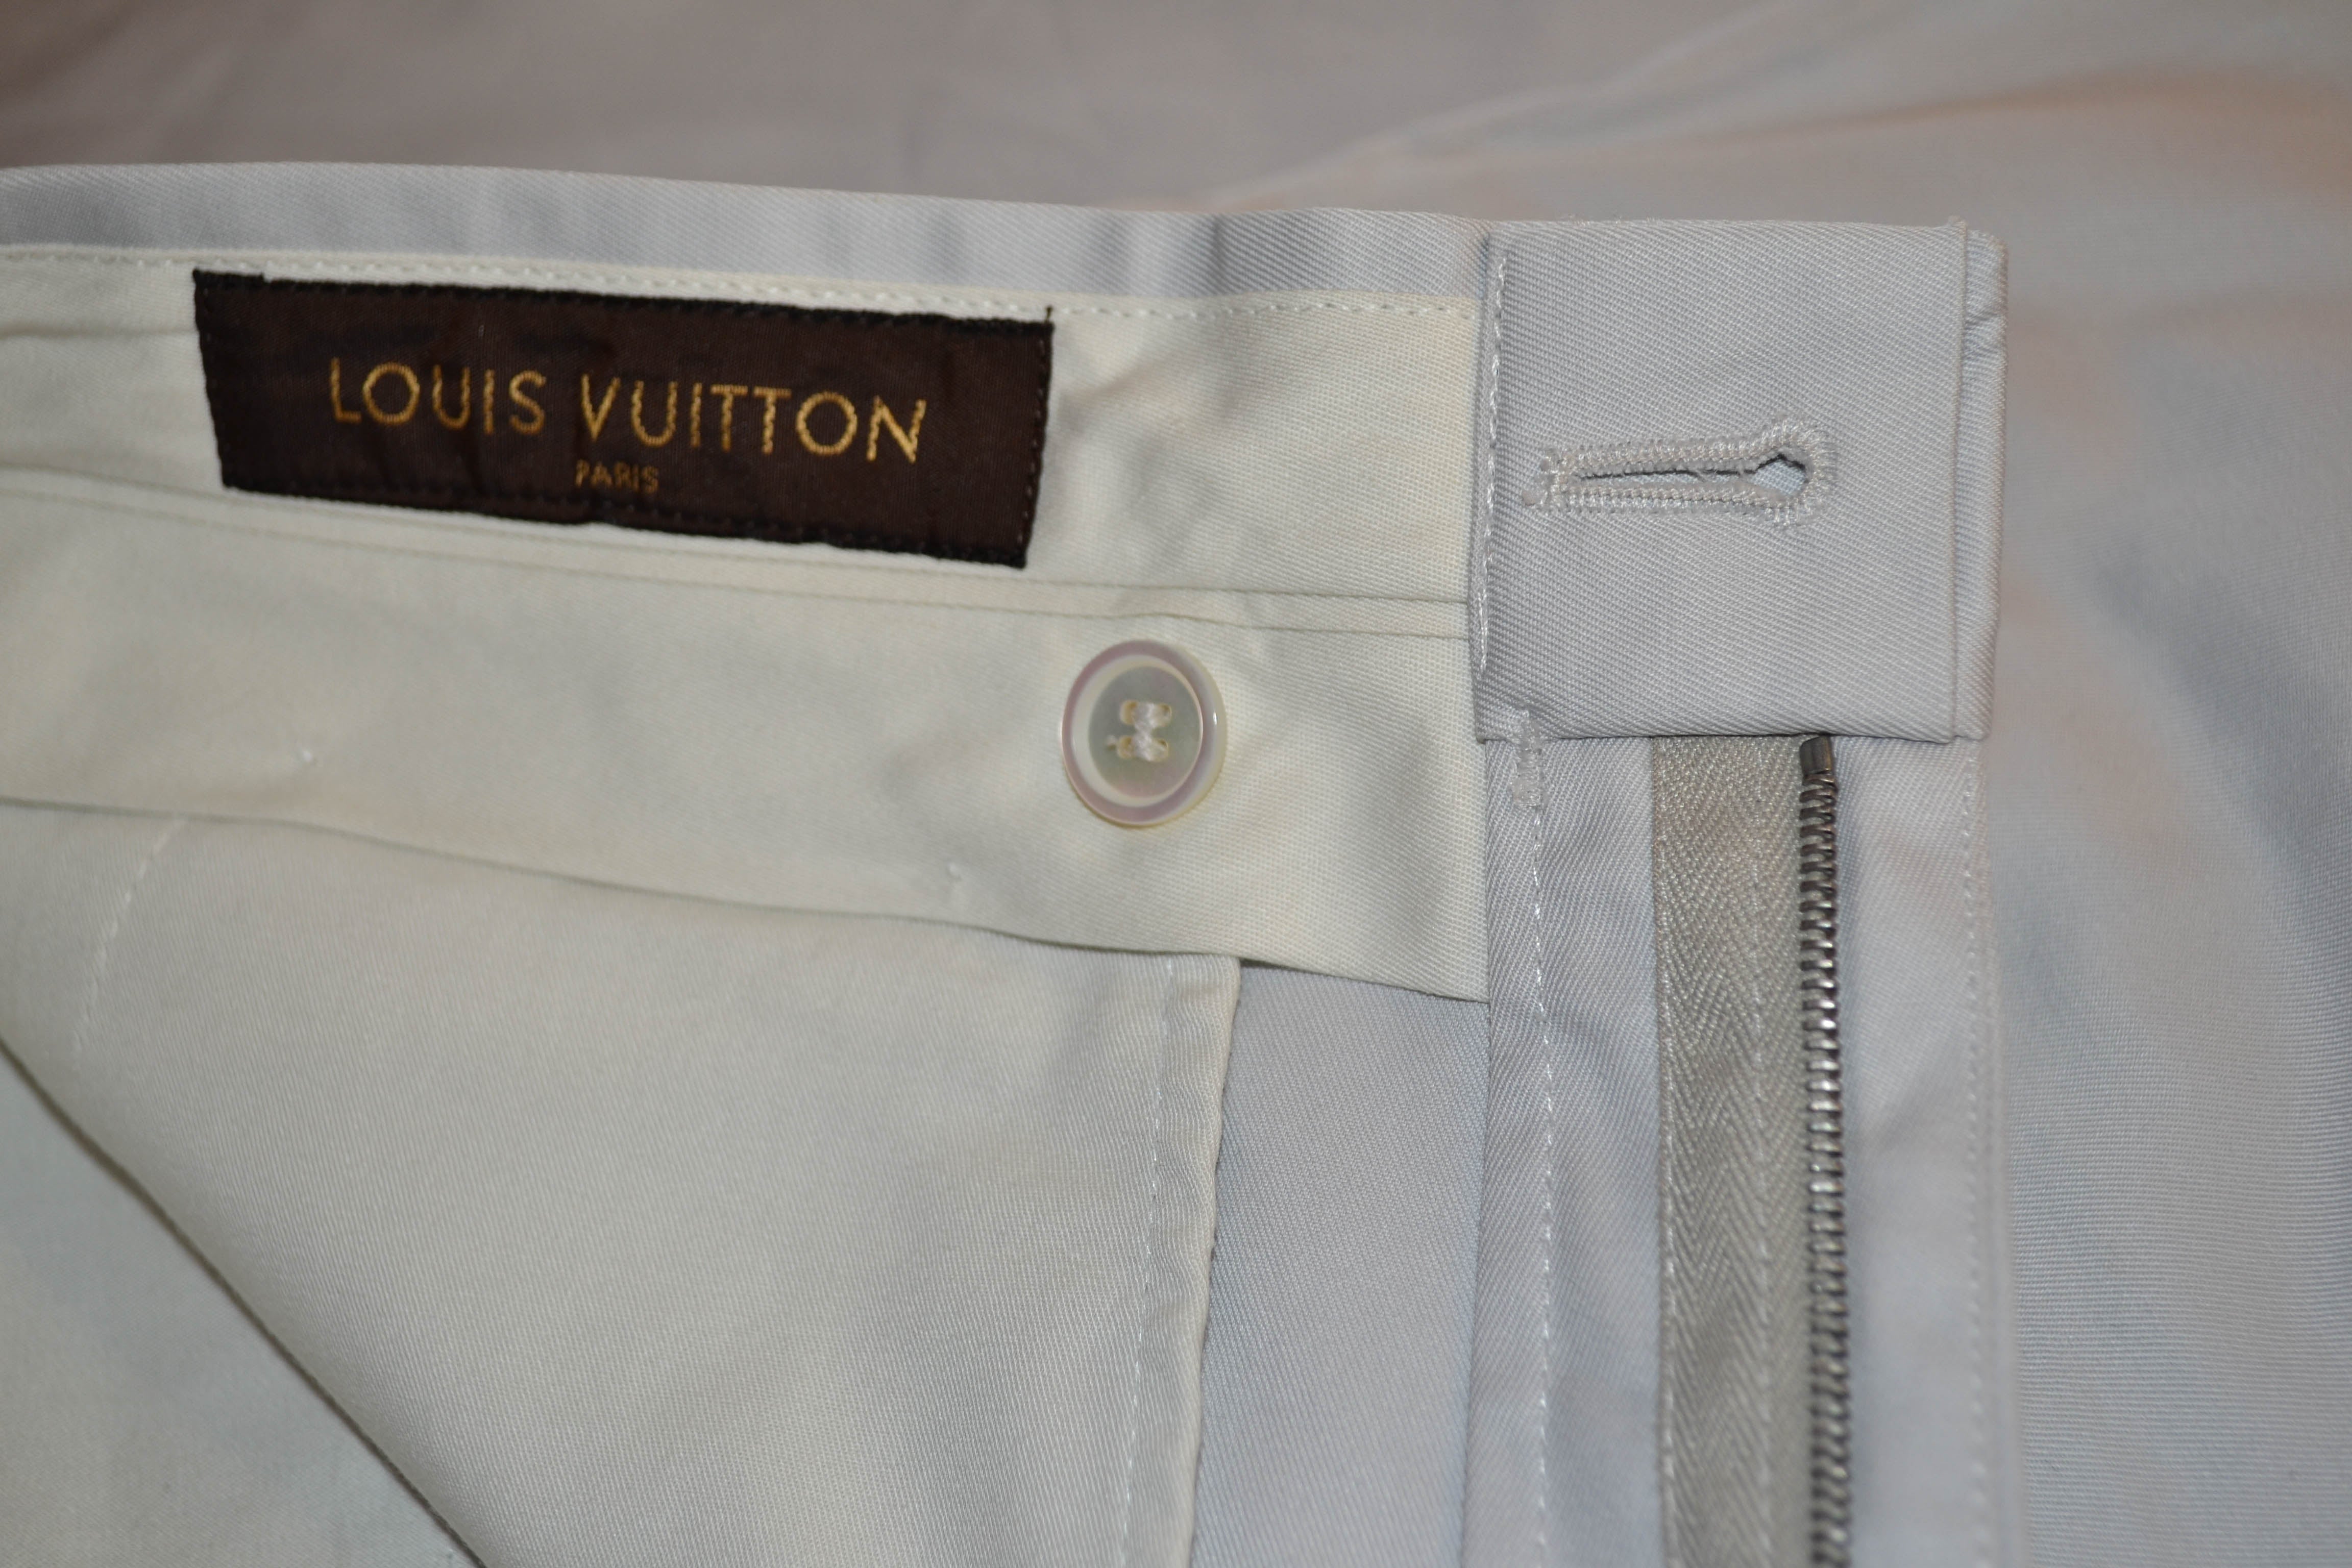 Authentic Louis Vuitton Men's Pants